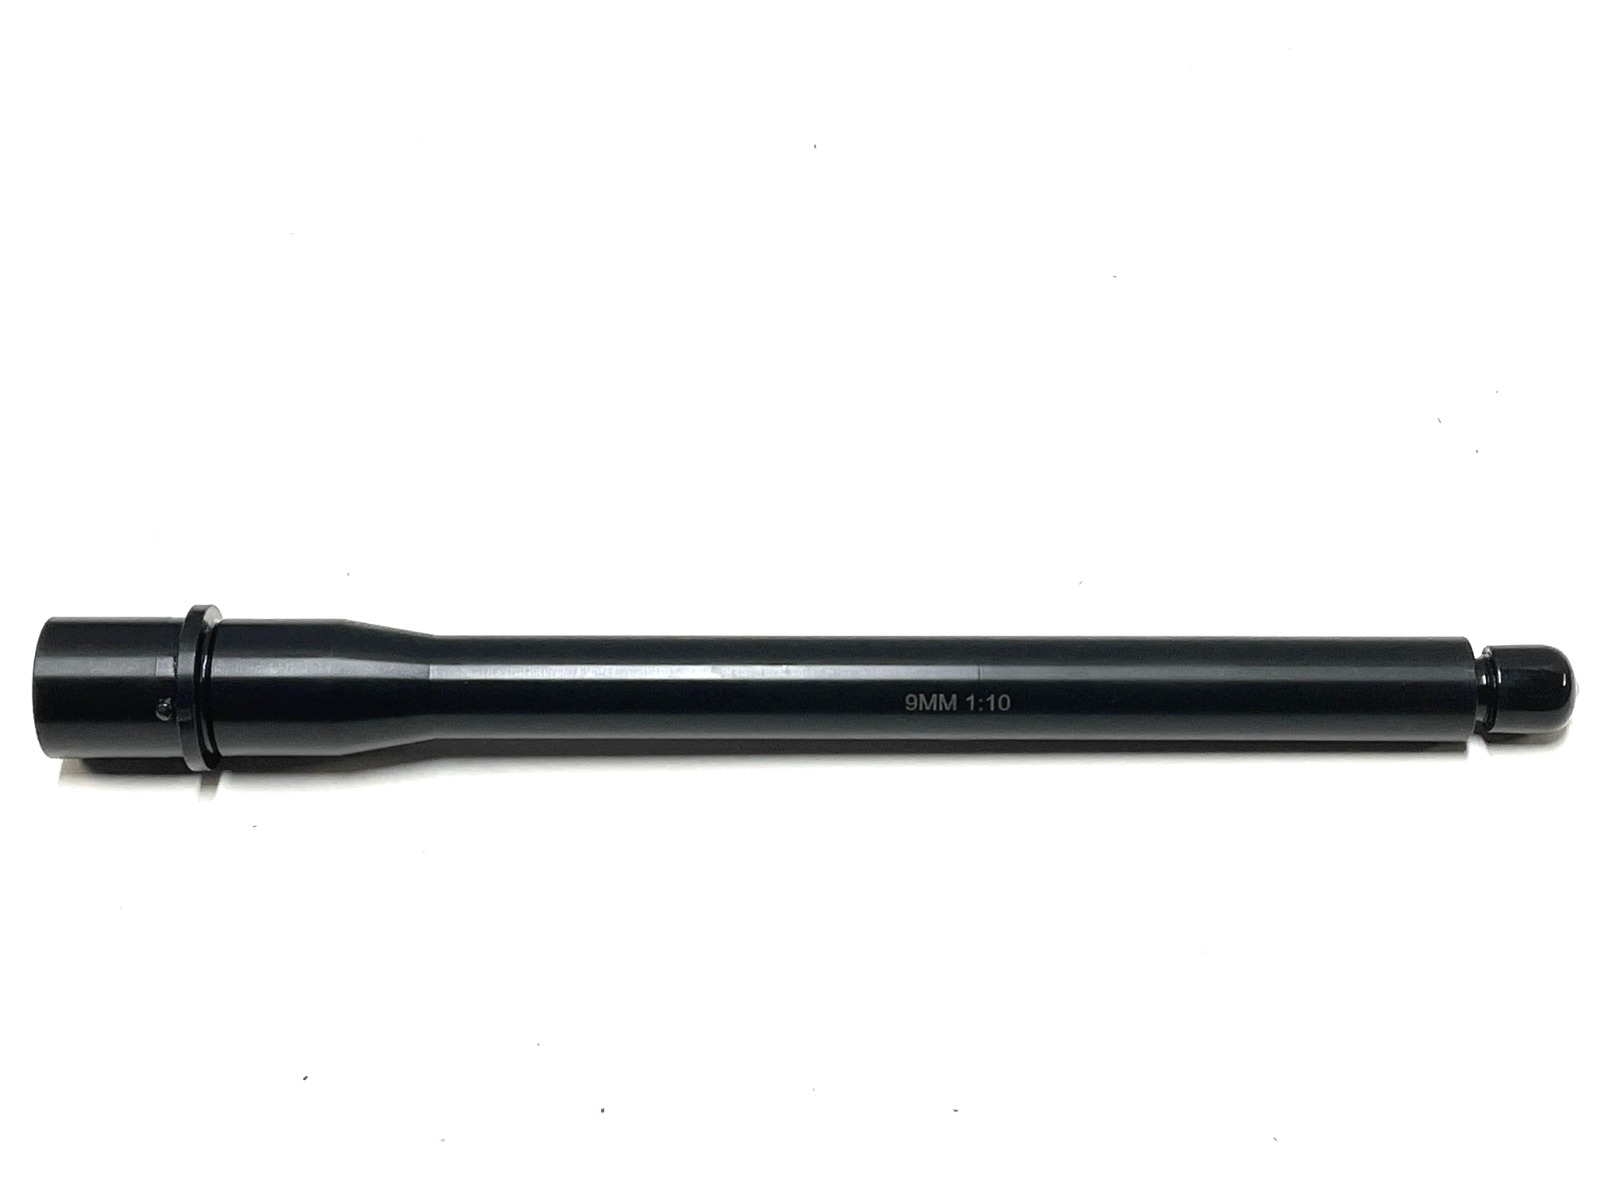 Polymer 80 PF940V2 80% Full Size Pistol Frame Kit - Black